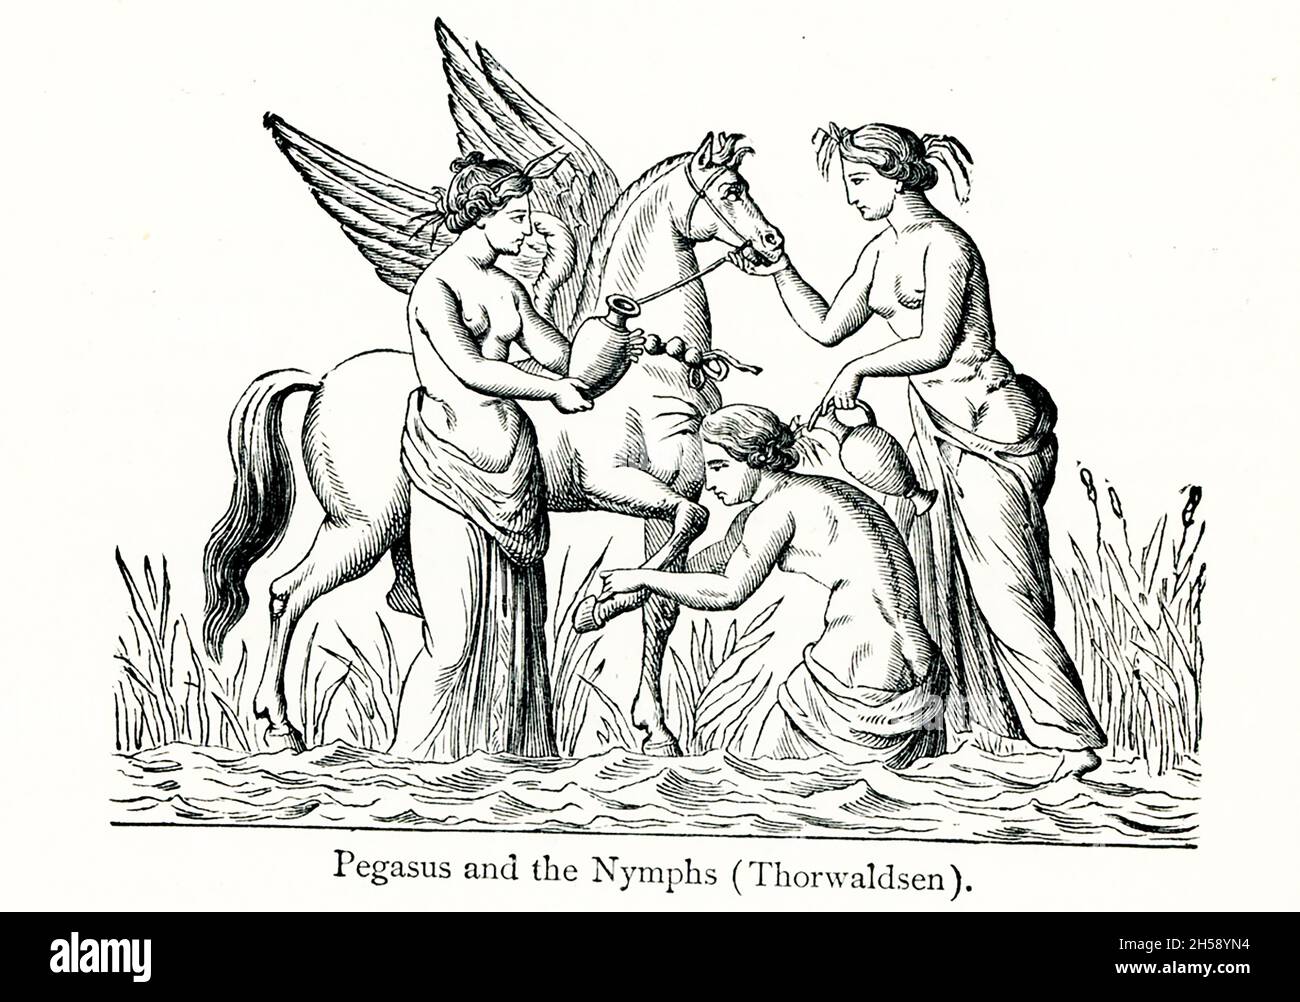 Según la mitología griega, el héroe Bellerophon, con la ayuda del caballo alado Pegasus, mató al monstruo como la Quimera, que era parte león, parte cabra, y parte dragón. Bellerophon se sintió demasiado orgulloso de sus logros y trató de volar al cielo sobre Pegasus, pero fue arrojado y cegado—y según una leyenda, asesinado. Esta ilustración muestra a Pegasus y tres ninfas cuidándolo. Fue realizada por Bertel Thorvaldsen (1770 –1844), escultor danés y medallista de fama internacional Foto de stock